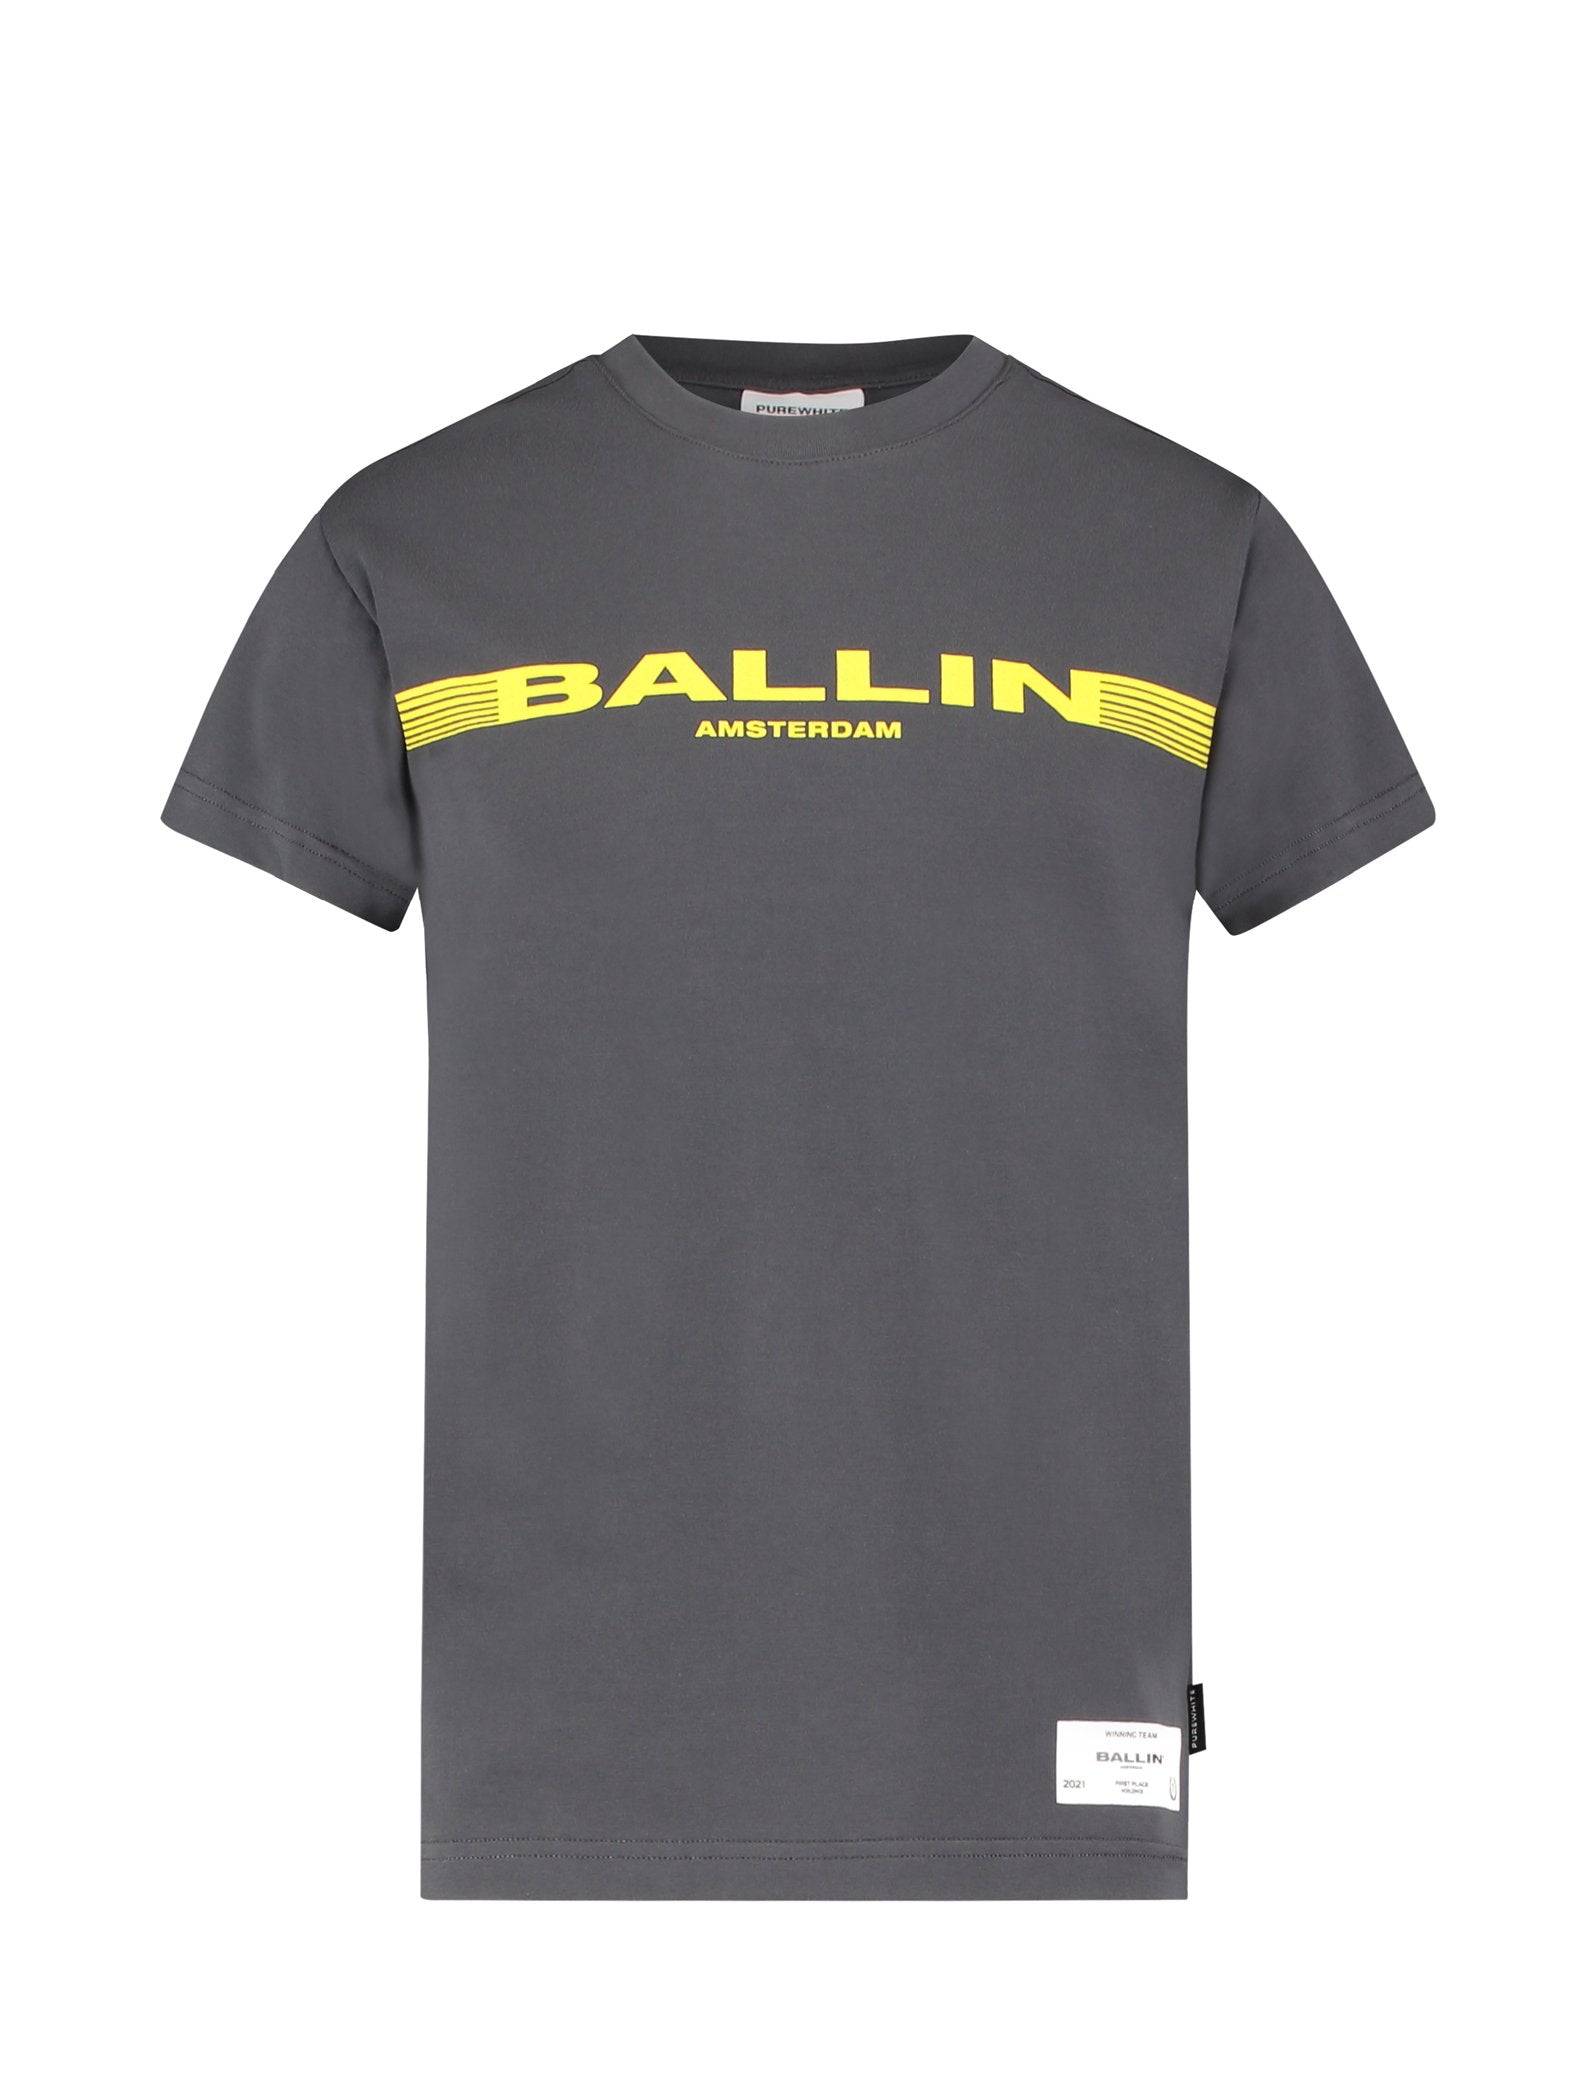 Jongens T-shirt Antra van Ballin Amsterdam in de kleur Antra in maat 176.